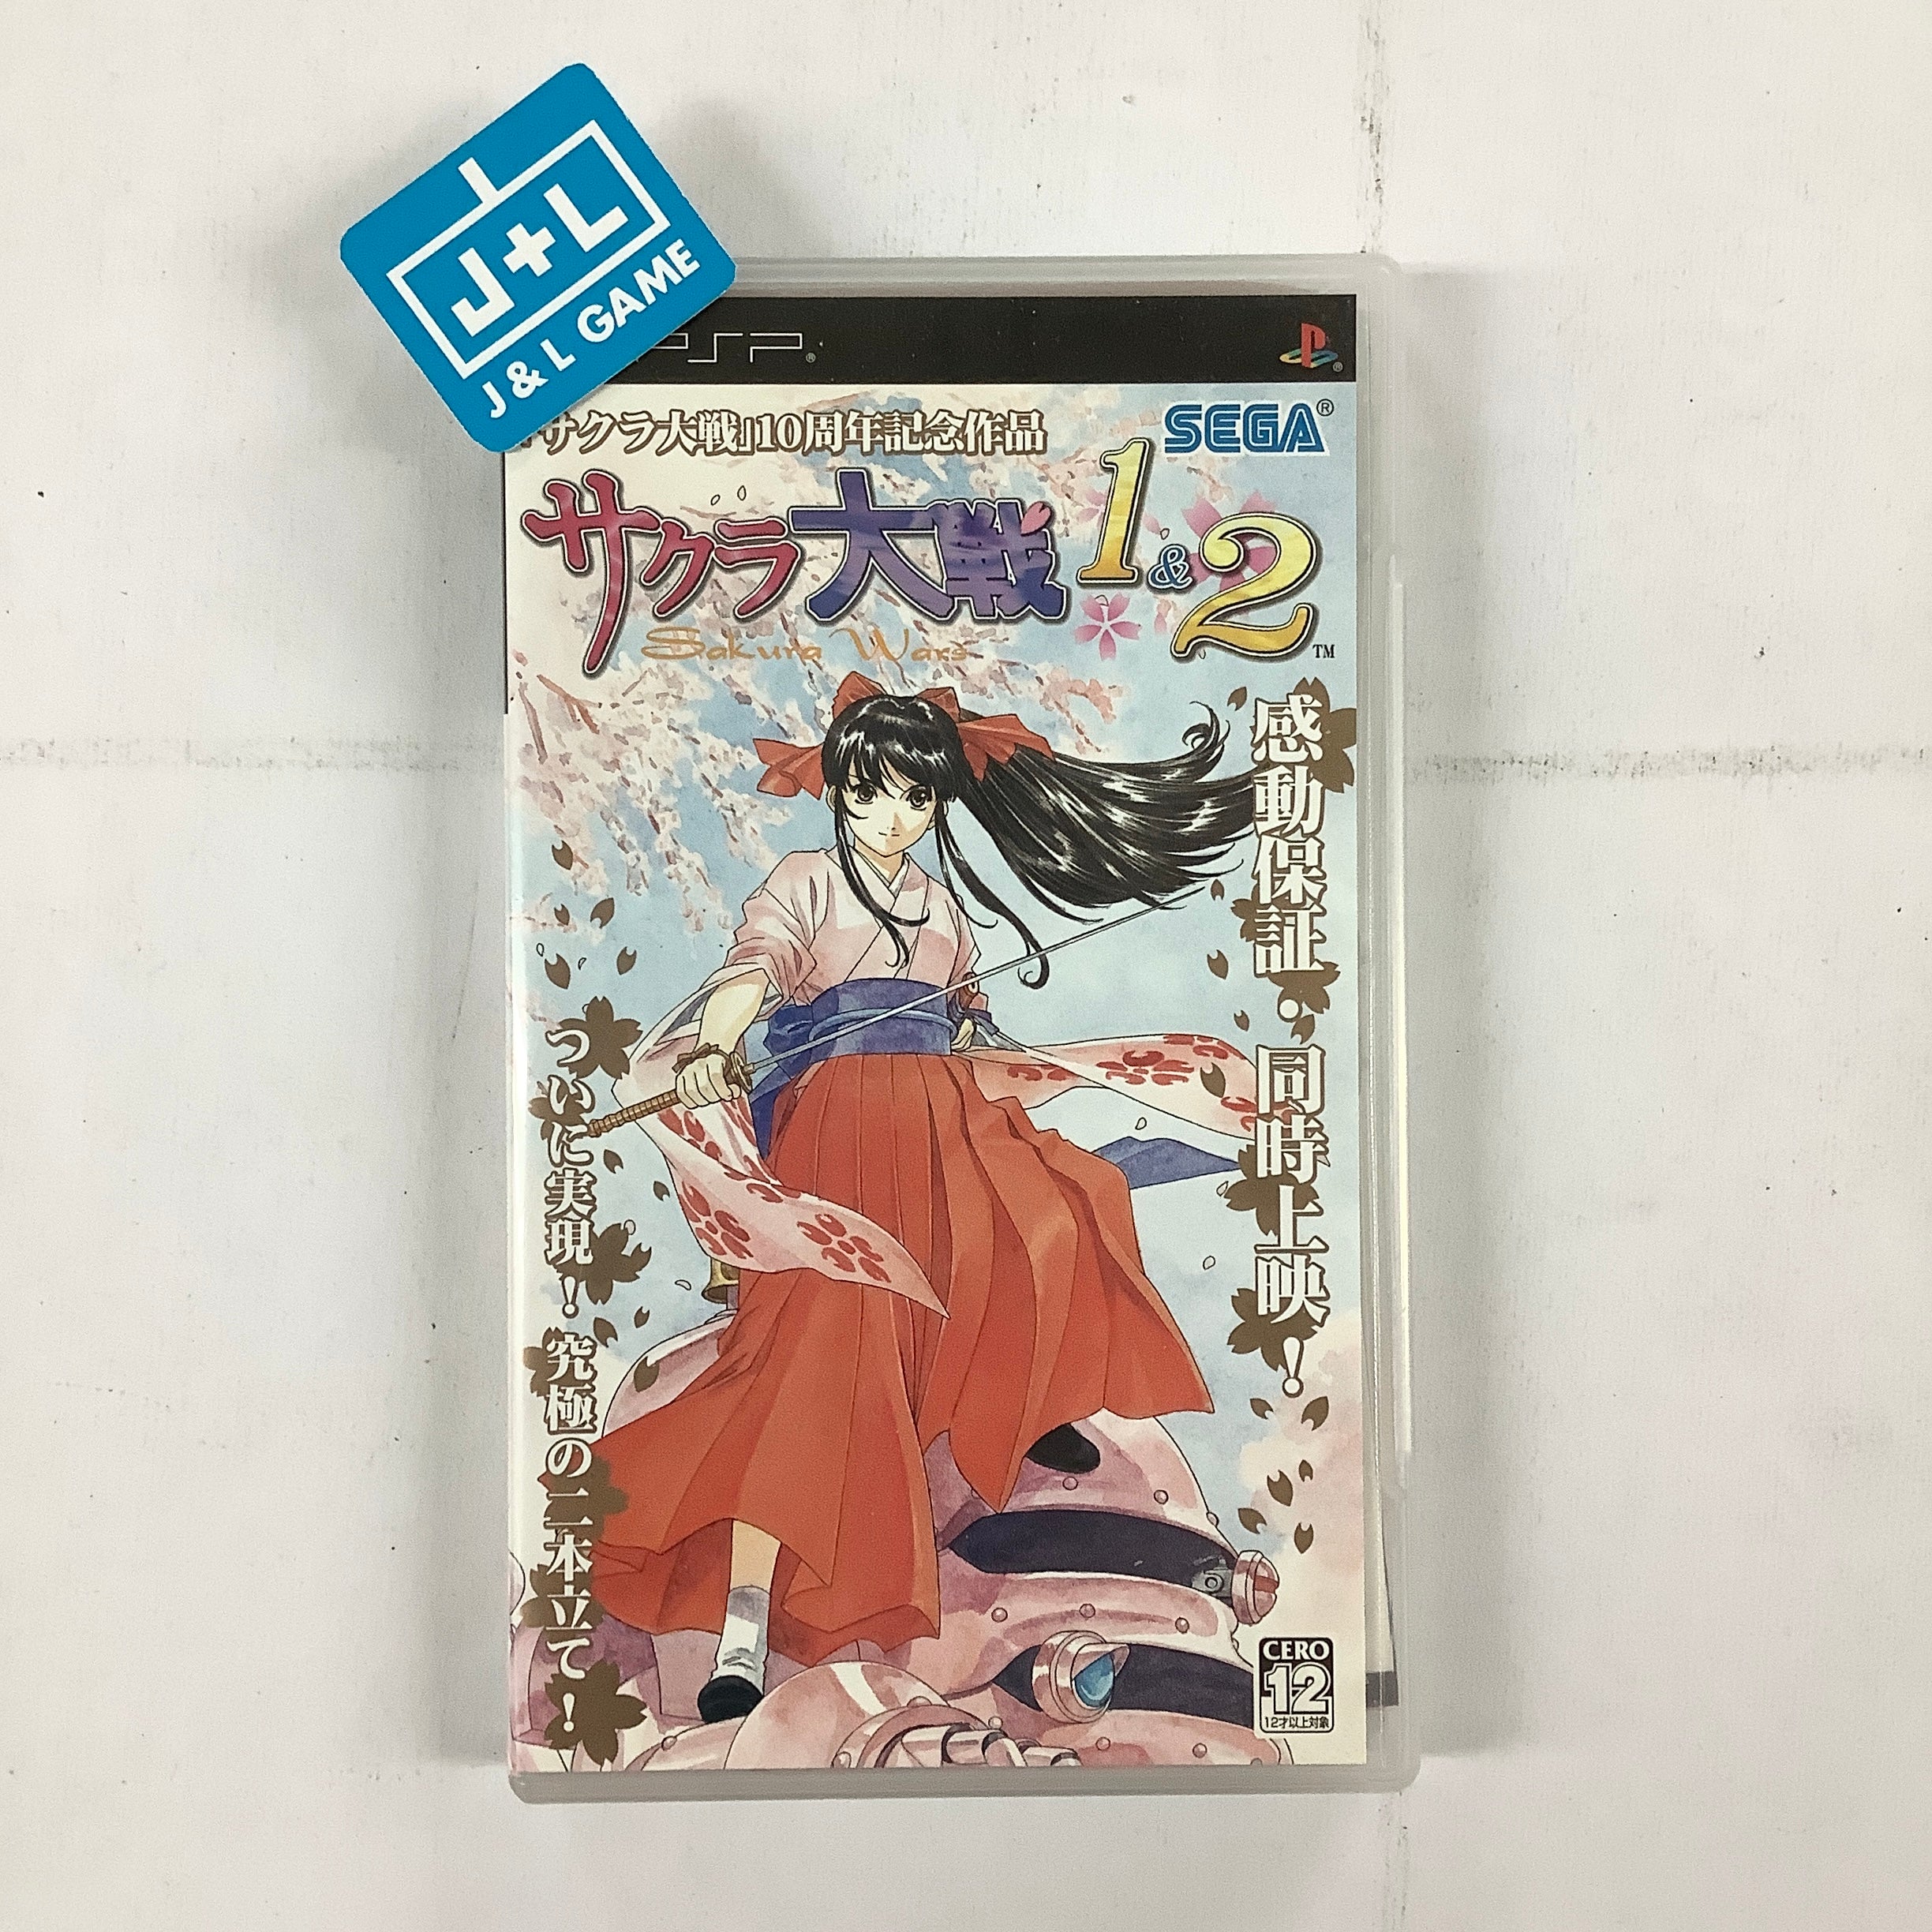 Sakura Taisen 1 & 2 - Sony PSP [Pre-Owned] (Japanese Import) Video Games Sega   